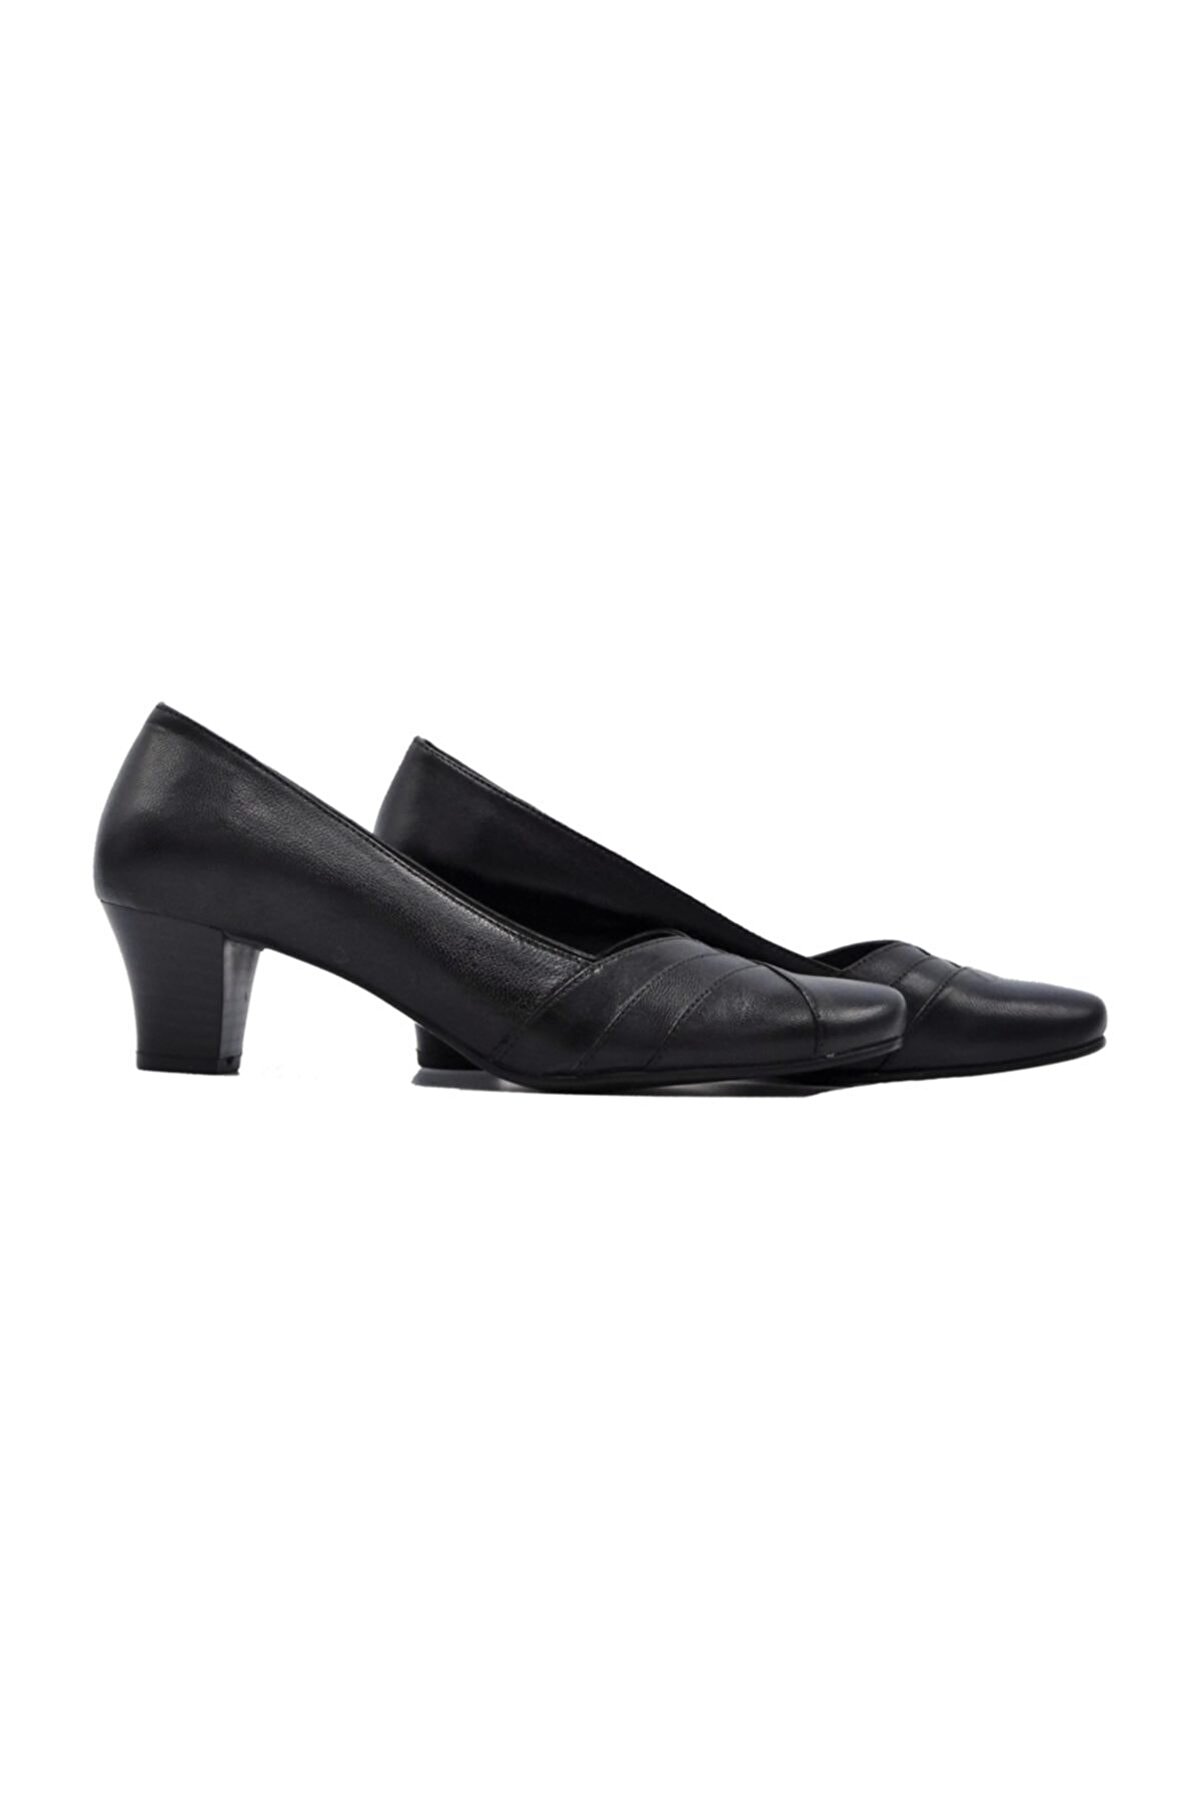 Zaim Kundura Kadın Hakiki Deri Siyah Klasik Topuklu Ayakkabı 505061353-1